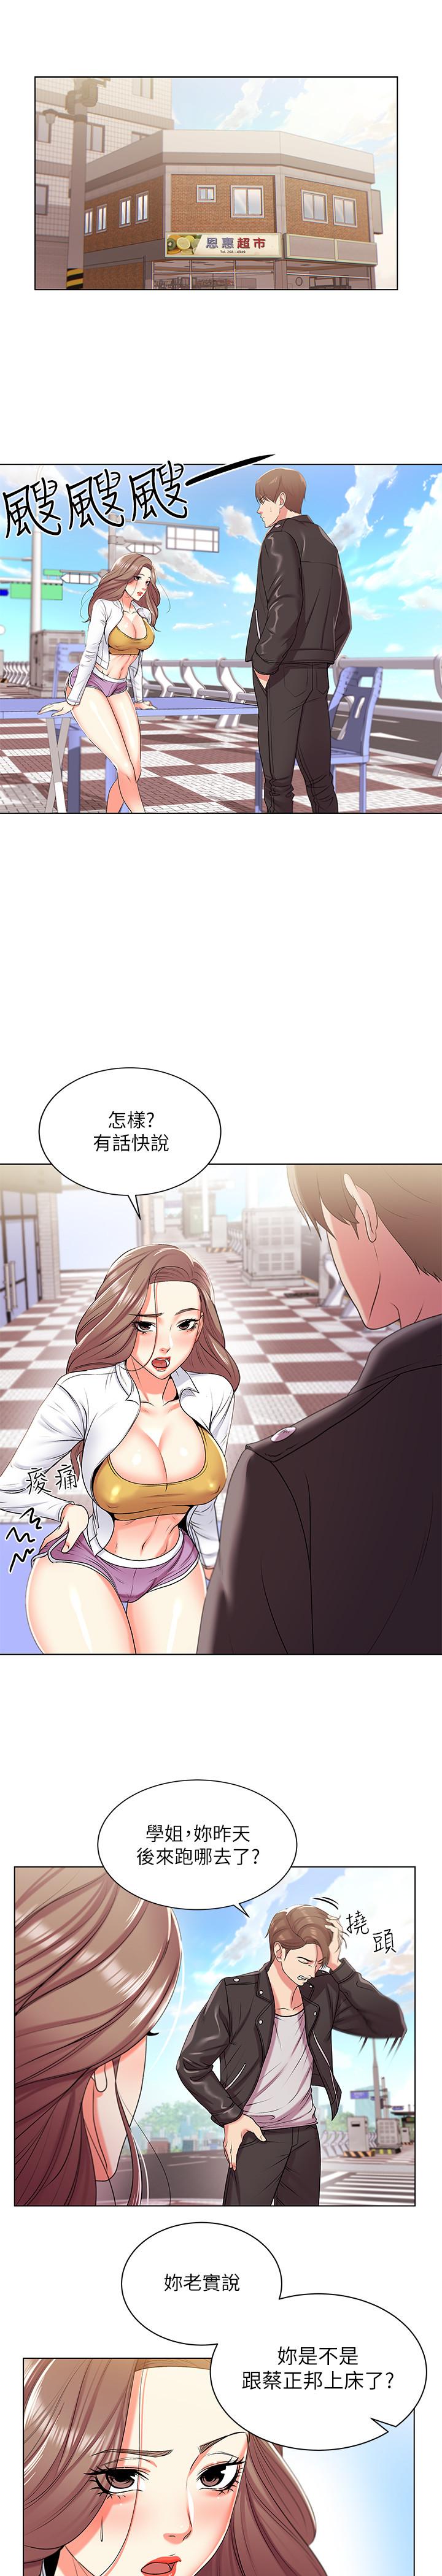 韩国污漫画 超市的漂亮姐姐 第13话-暧昧的全身按摩 3